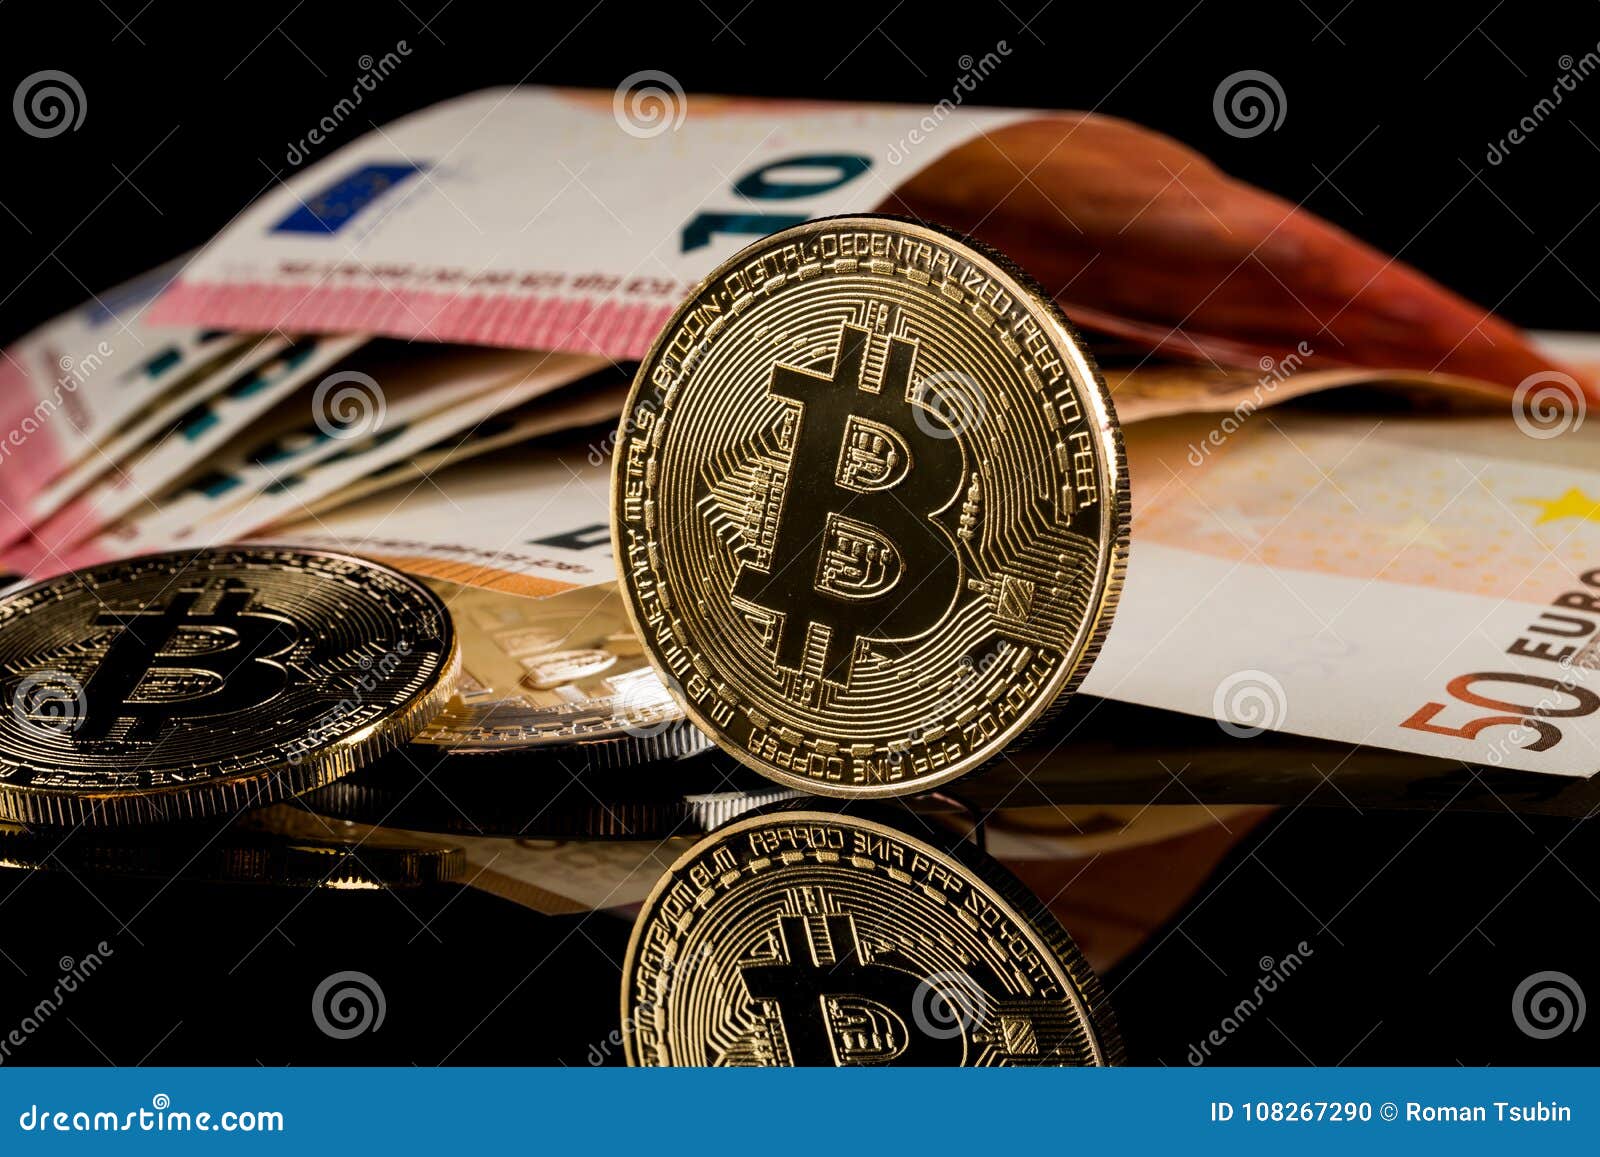 Physical Version Of Bitcoin Coin Aka Virtual Money Stock ...